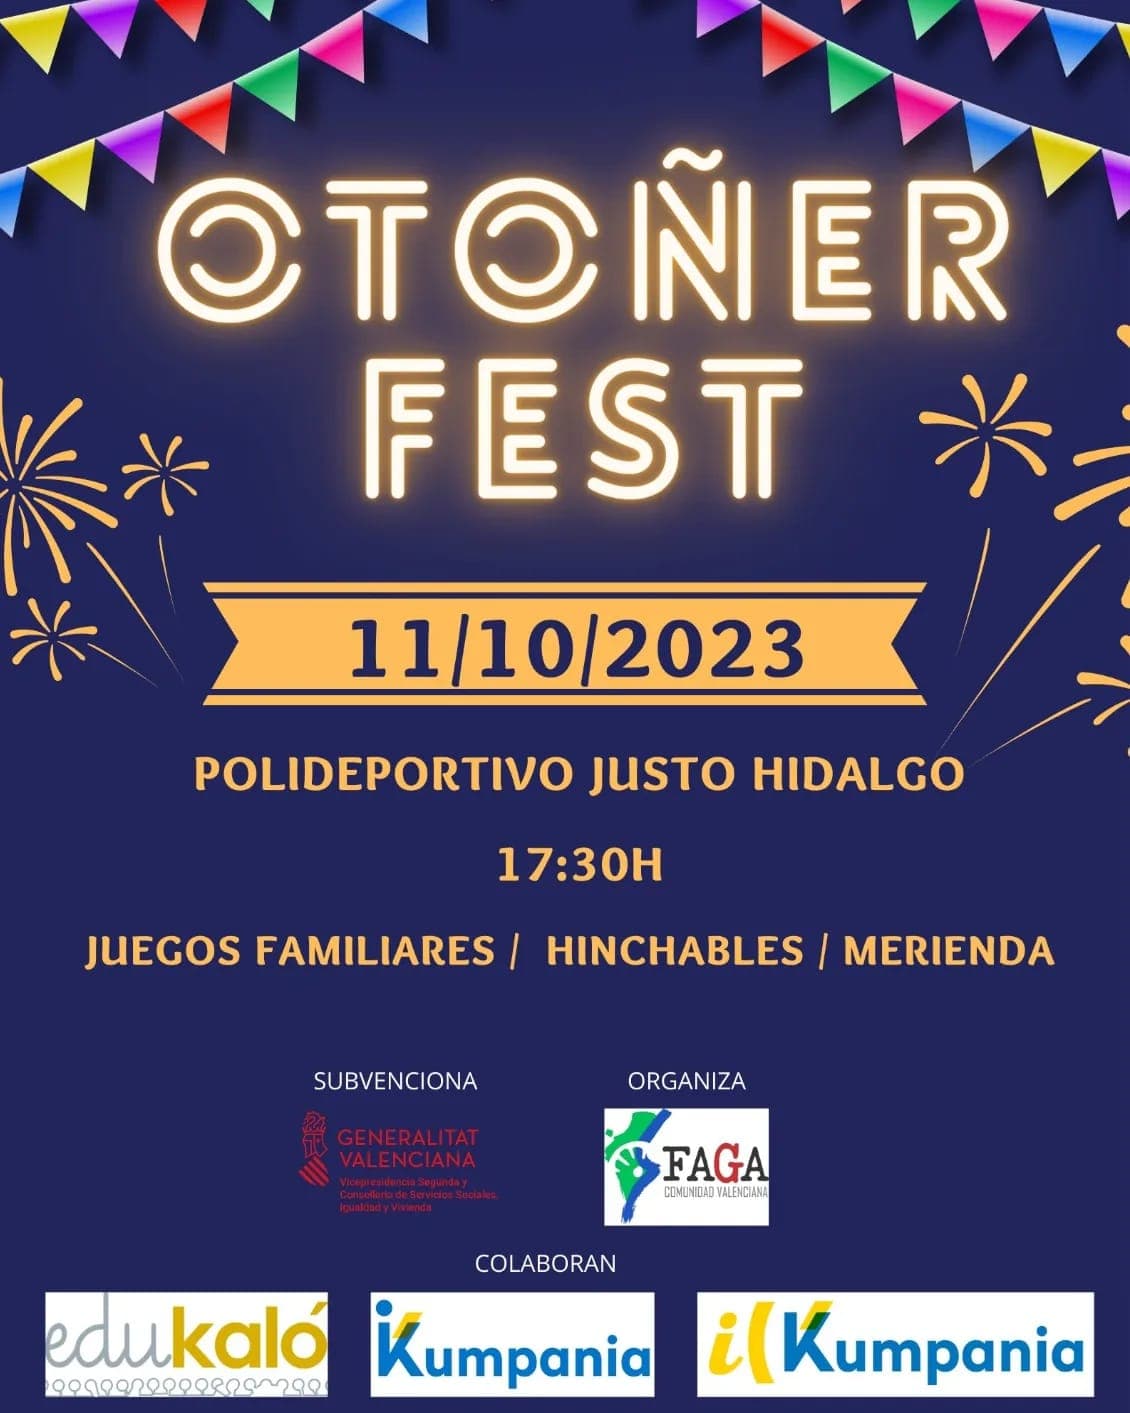  Otoñerfest: fiesta comunitaria de bienvenida del otoño 

